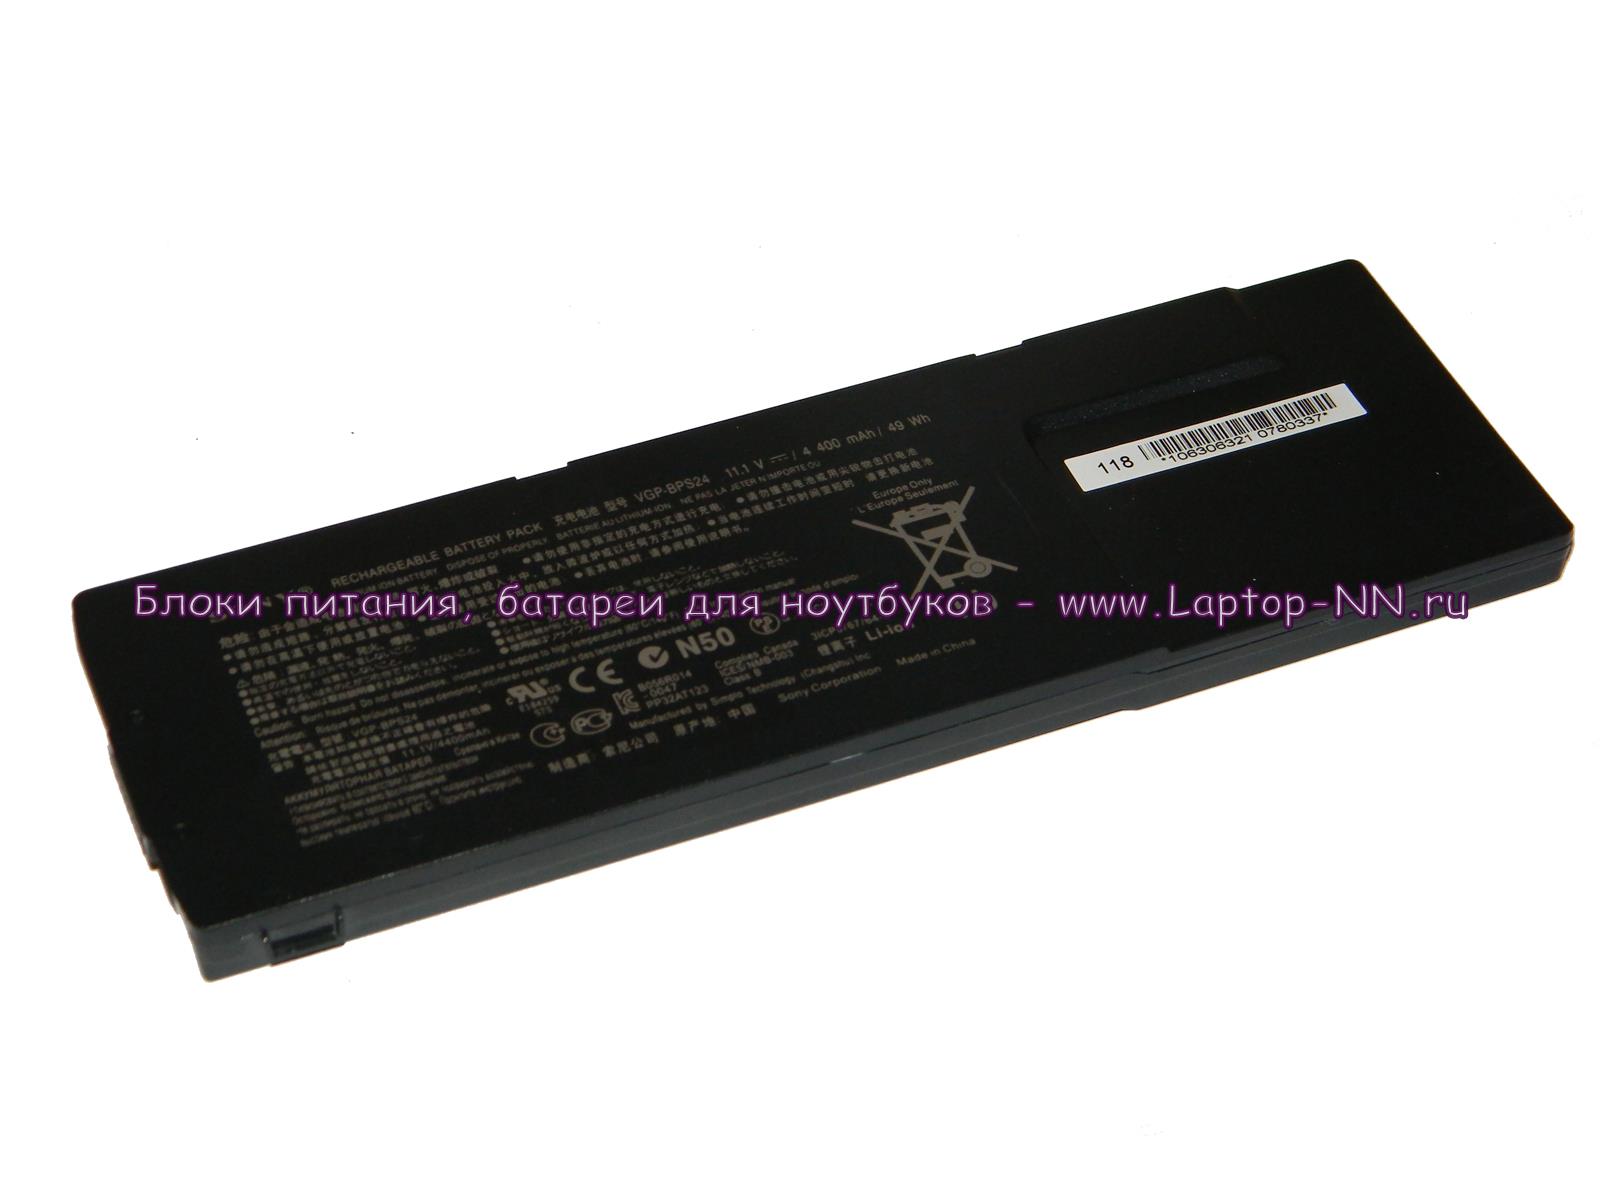 Купить аккумуляторную батарею для ноутбука Sony VGP-BPSC24 11.1v 4400mAh в Нижнем Новгороде